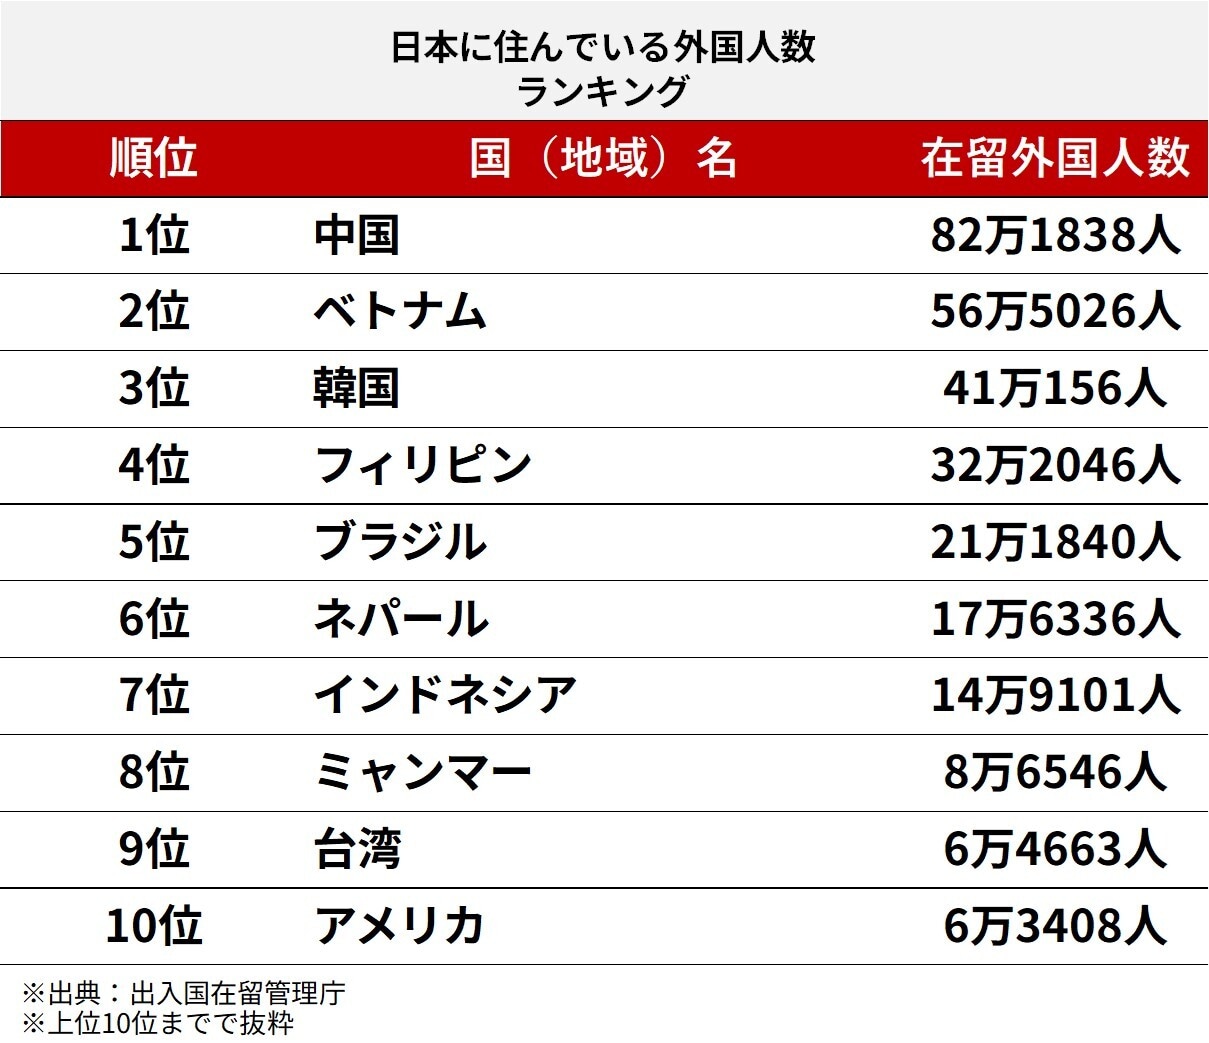 日本に住んでいる外国人数ランキング